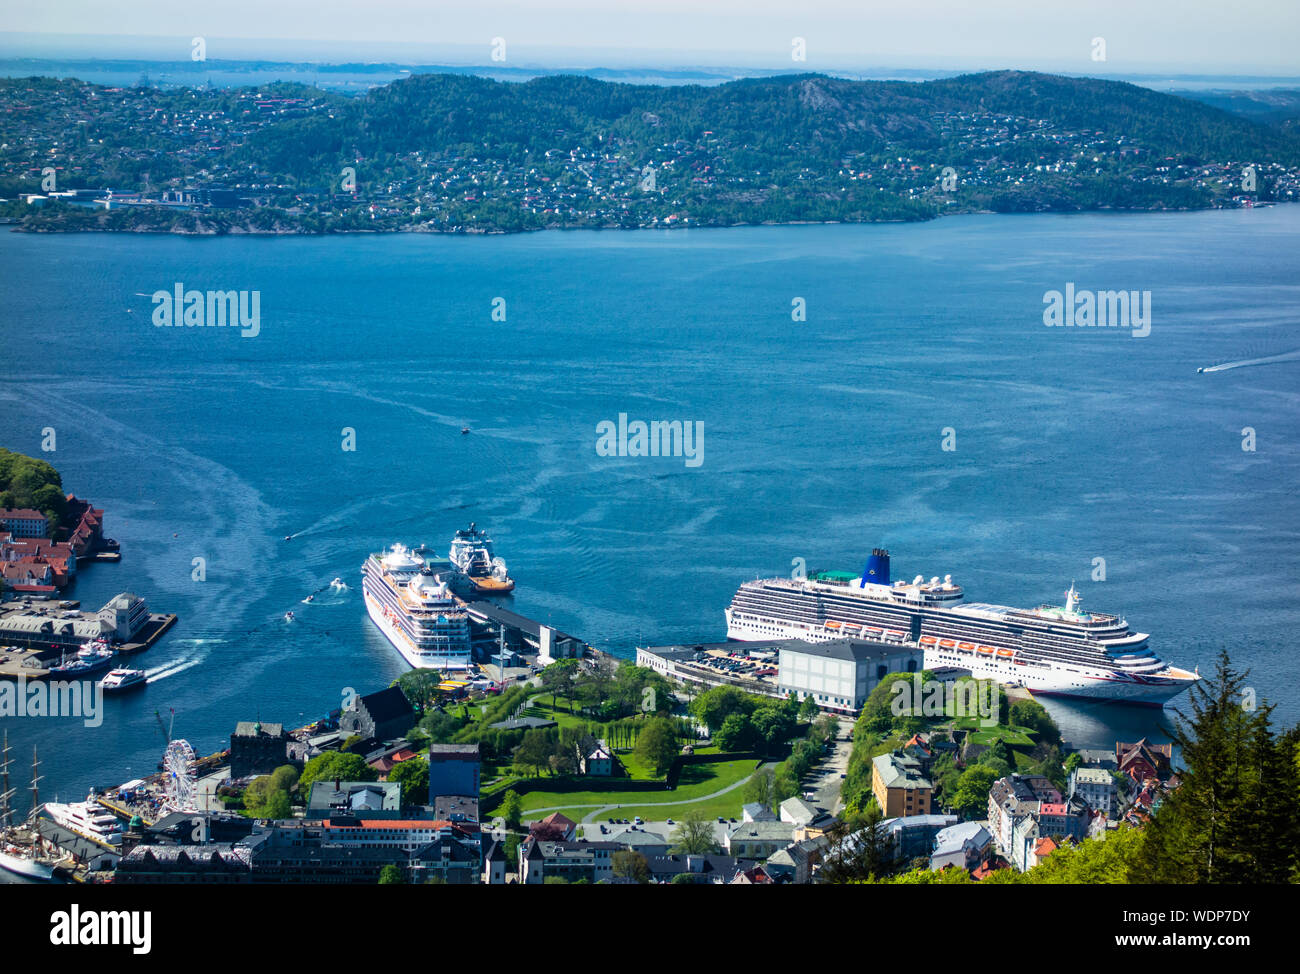 BERGEN, Norvegia - 19 Maggio 2017: il porto di Bergen nel centro della città ha la capacità di gestire grandi navi da crociera. Foto Stock